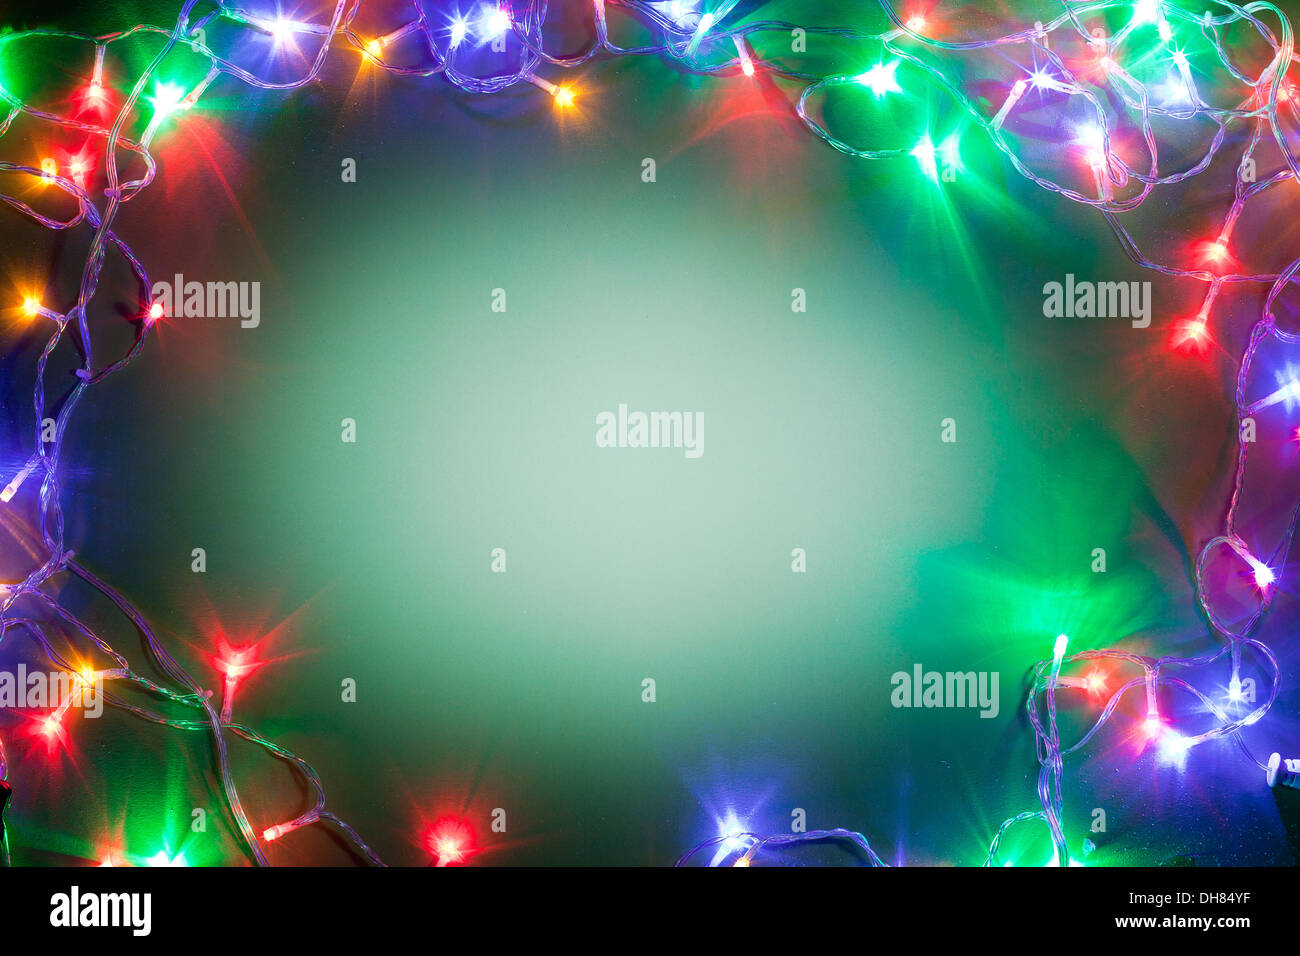 Weihnachtsbaum-Set als Rahmen angeordnet. Stockfoto